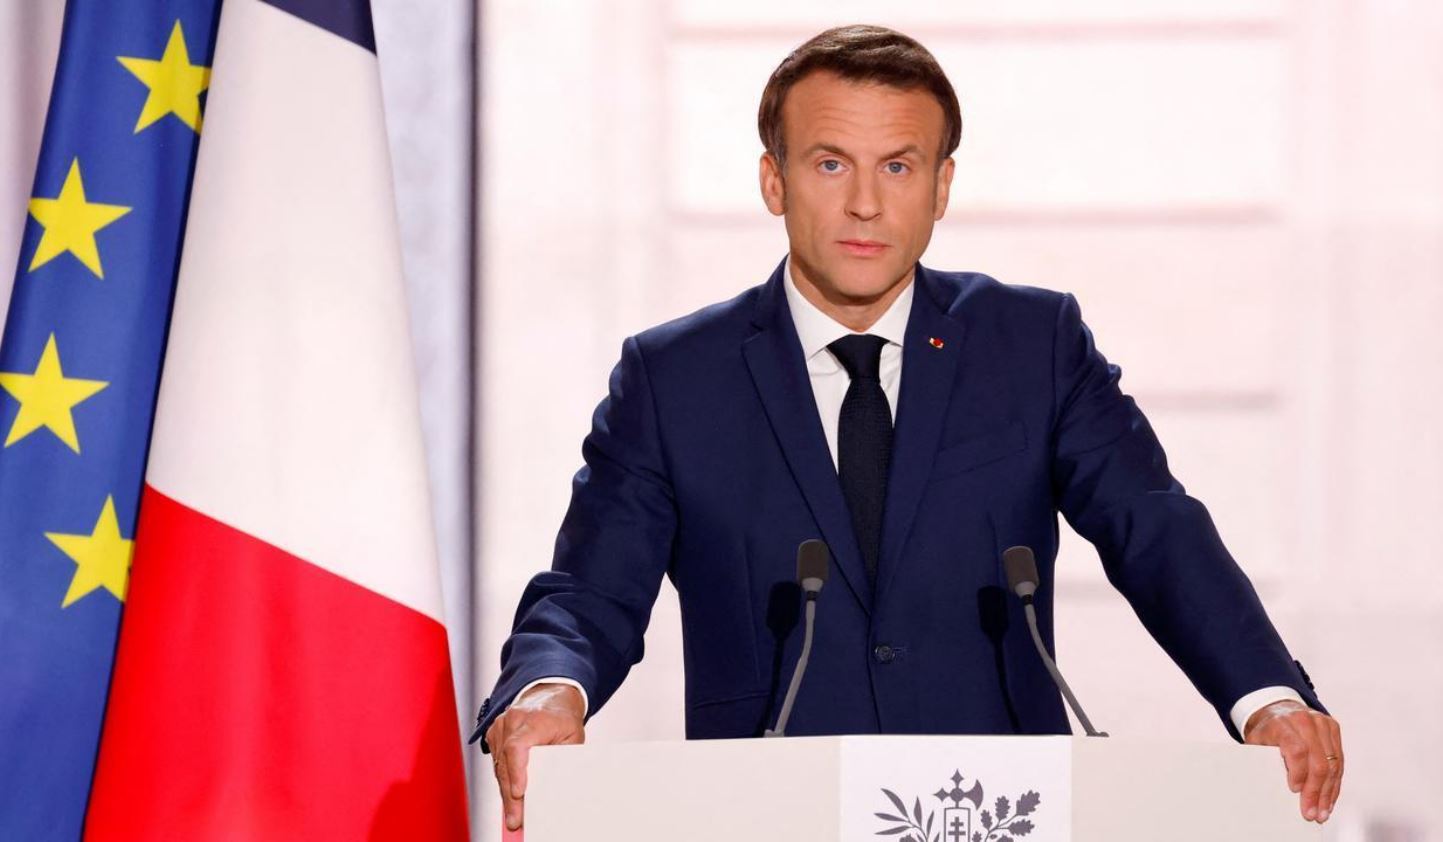     Tempête Fiona : Emmanuel Macron annonce la venue de Jean-François Carenco en Guadeloupe

